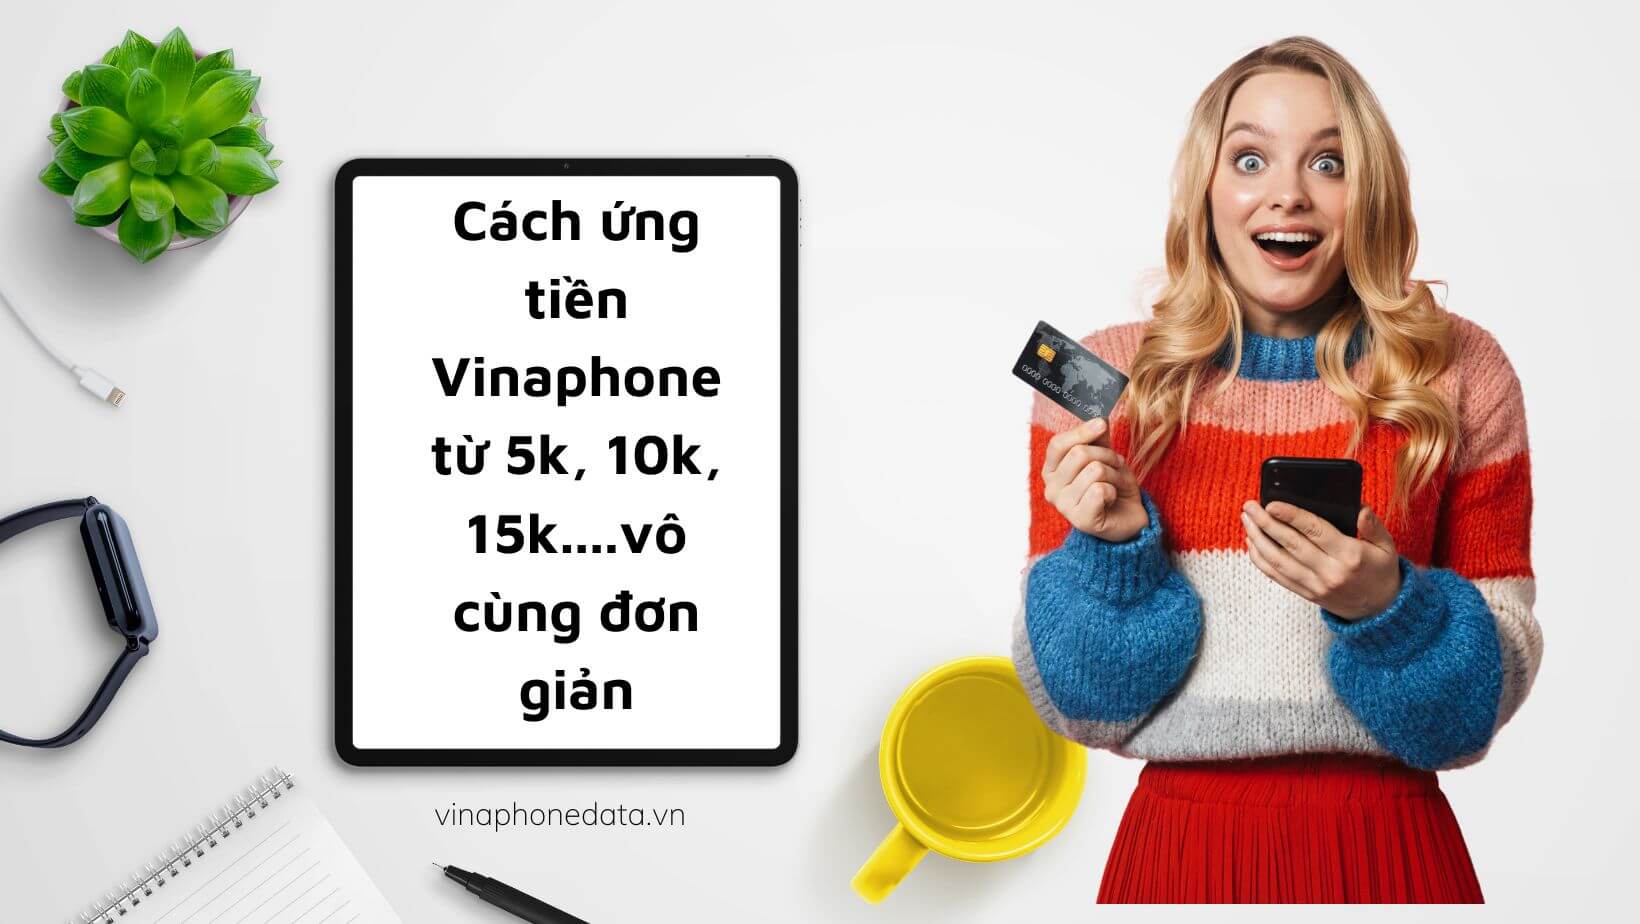 Cách ứng tiền Vinaphone từ 5k, 10k, 15k....vô cùng đơn giản - Vinaphone Data